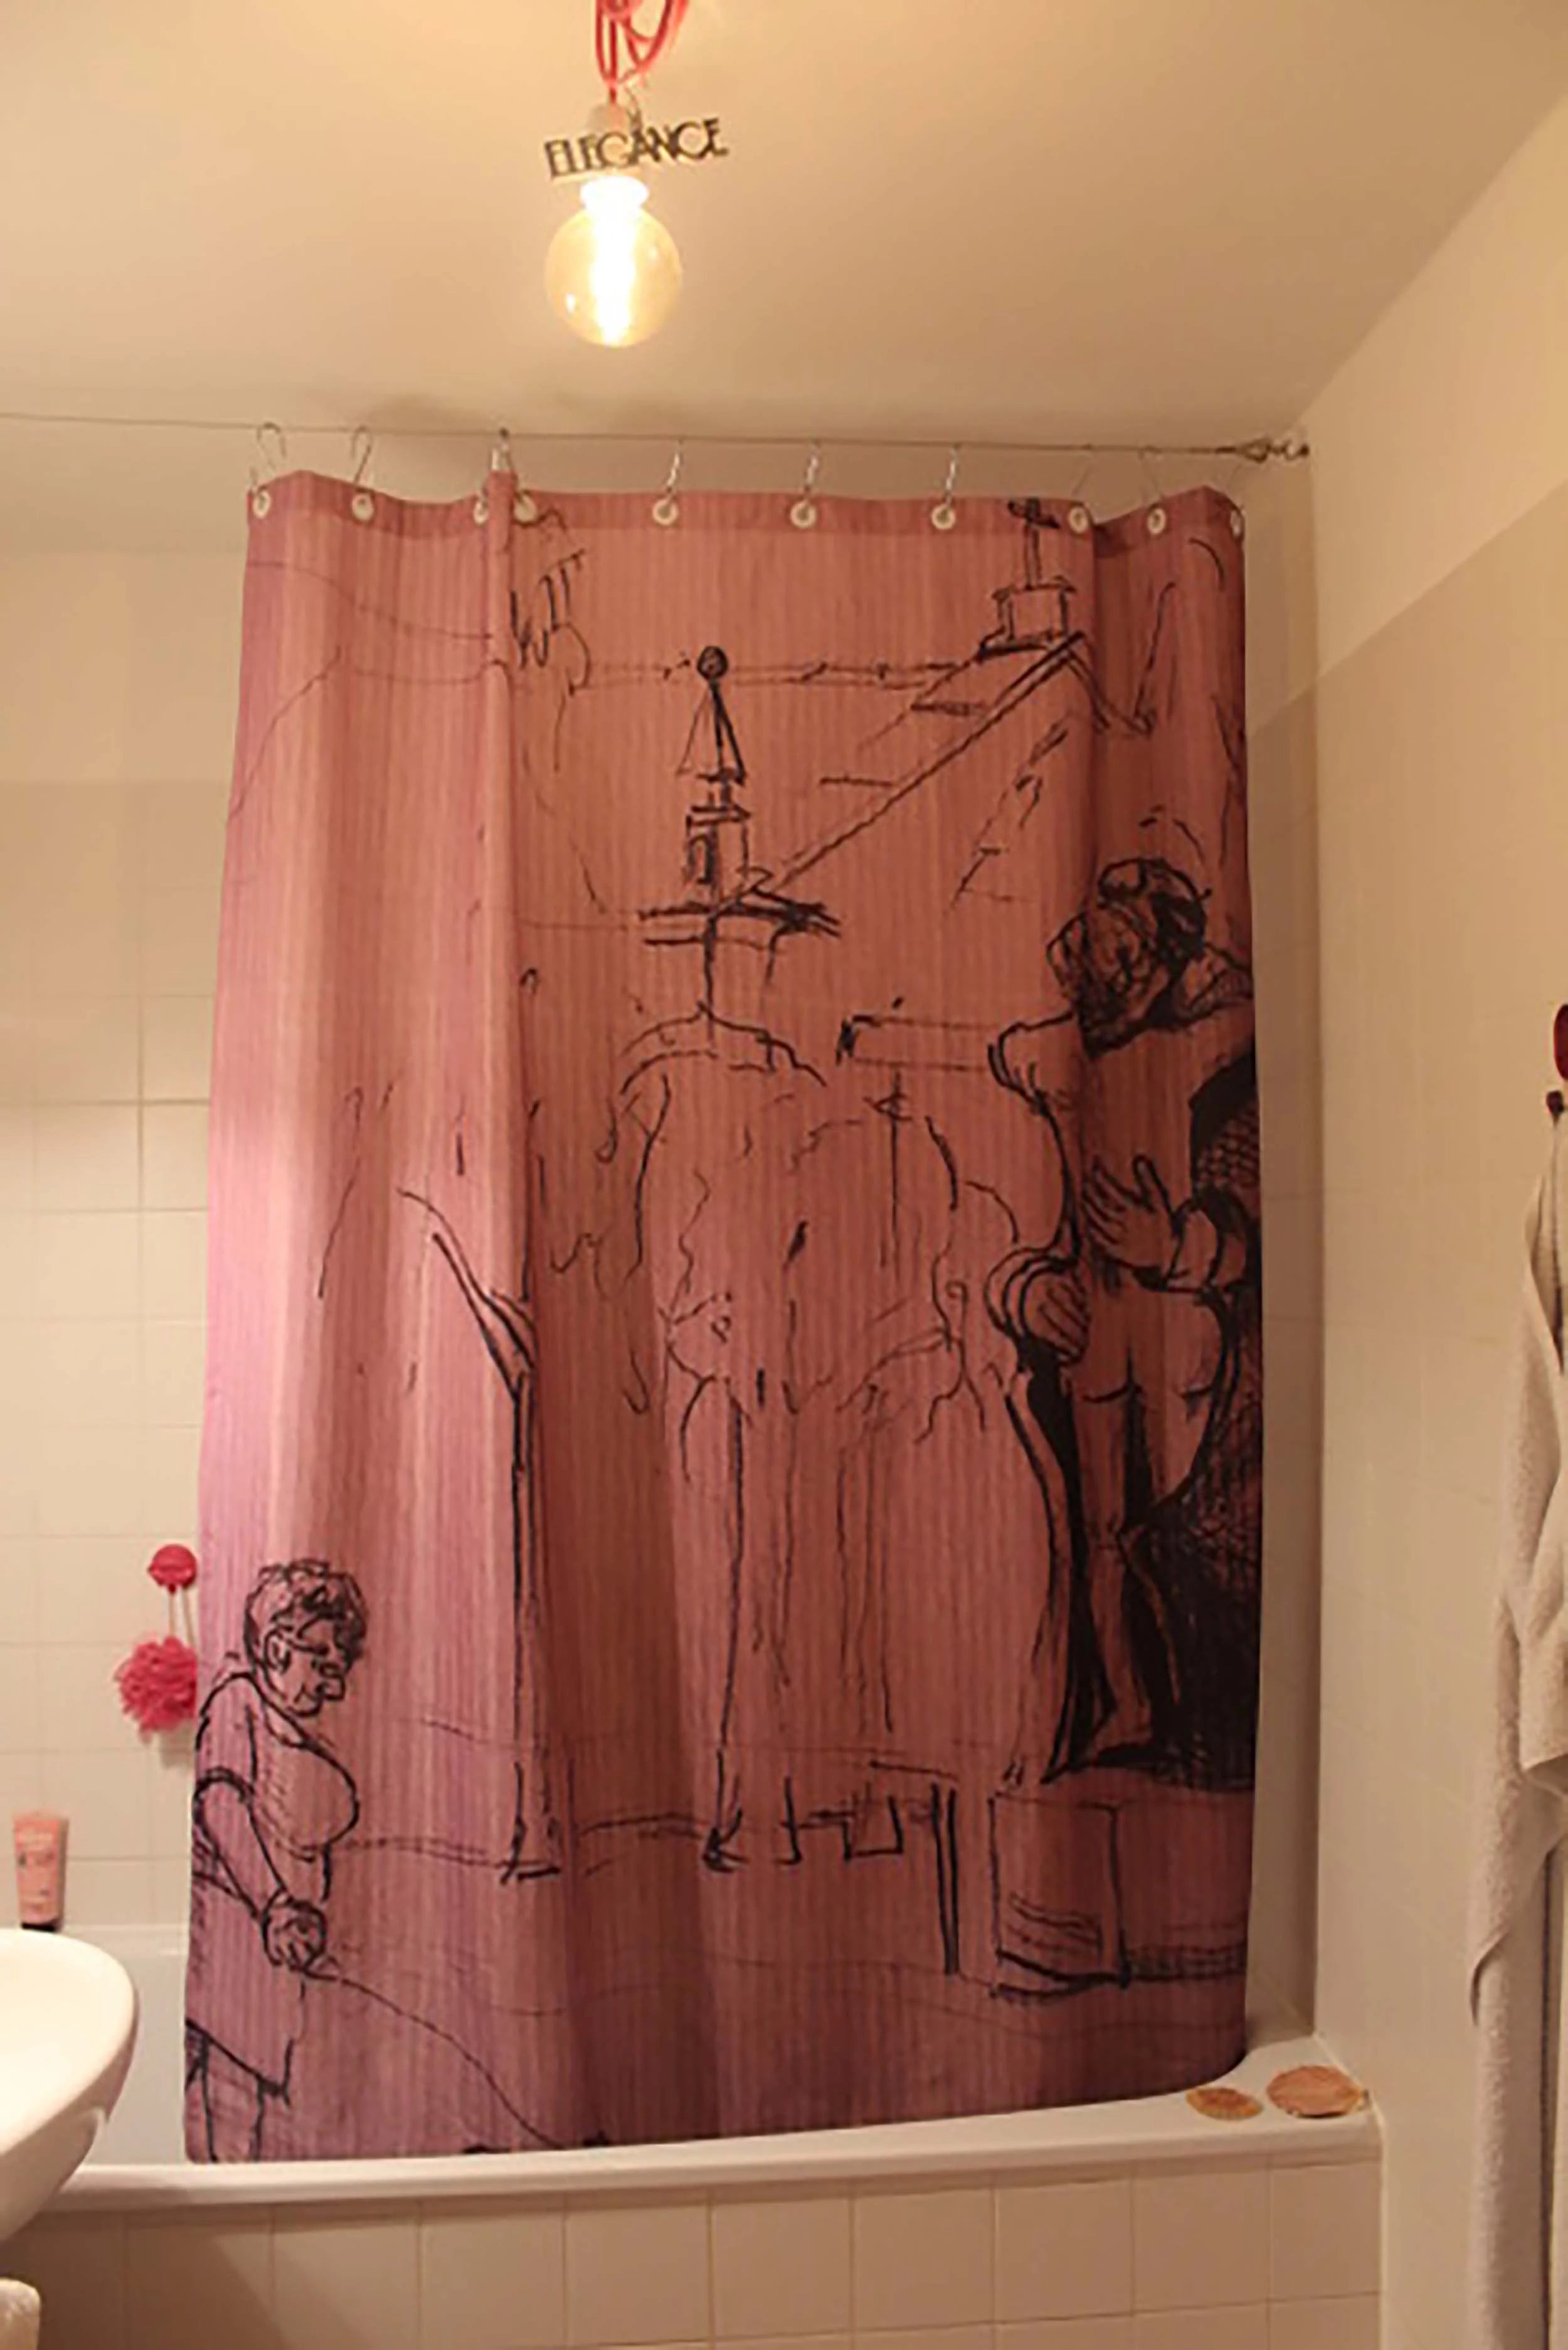 mit selbst gezeichneten Motiv bedruckter Foto-Duschvorhang für die Badewanne im Badezimmer